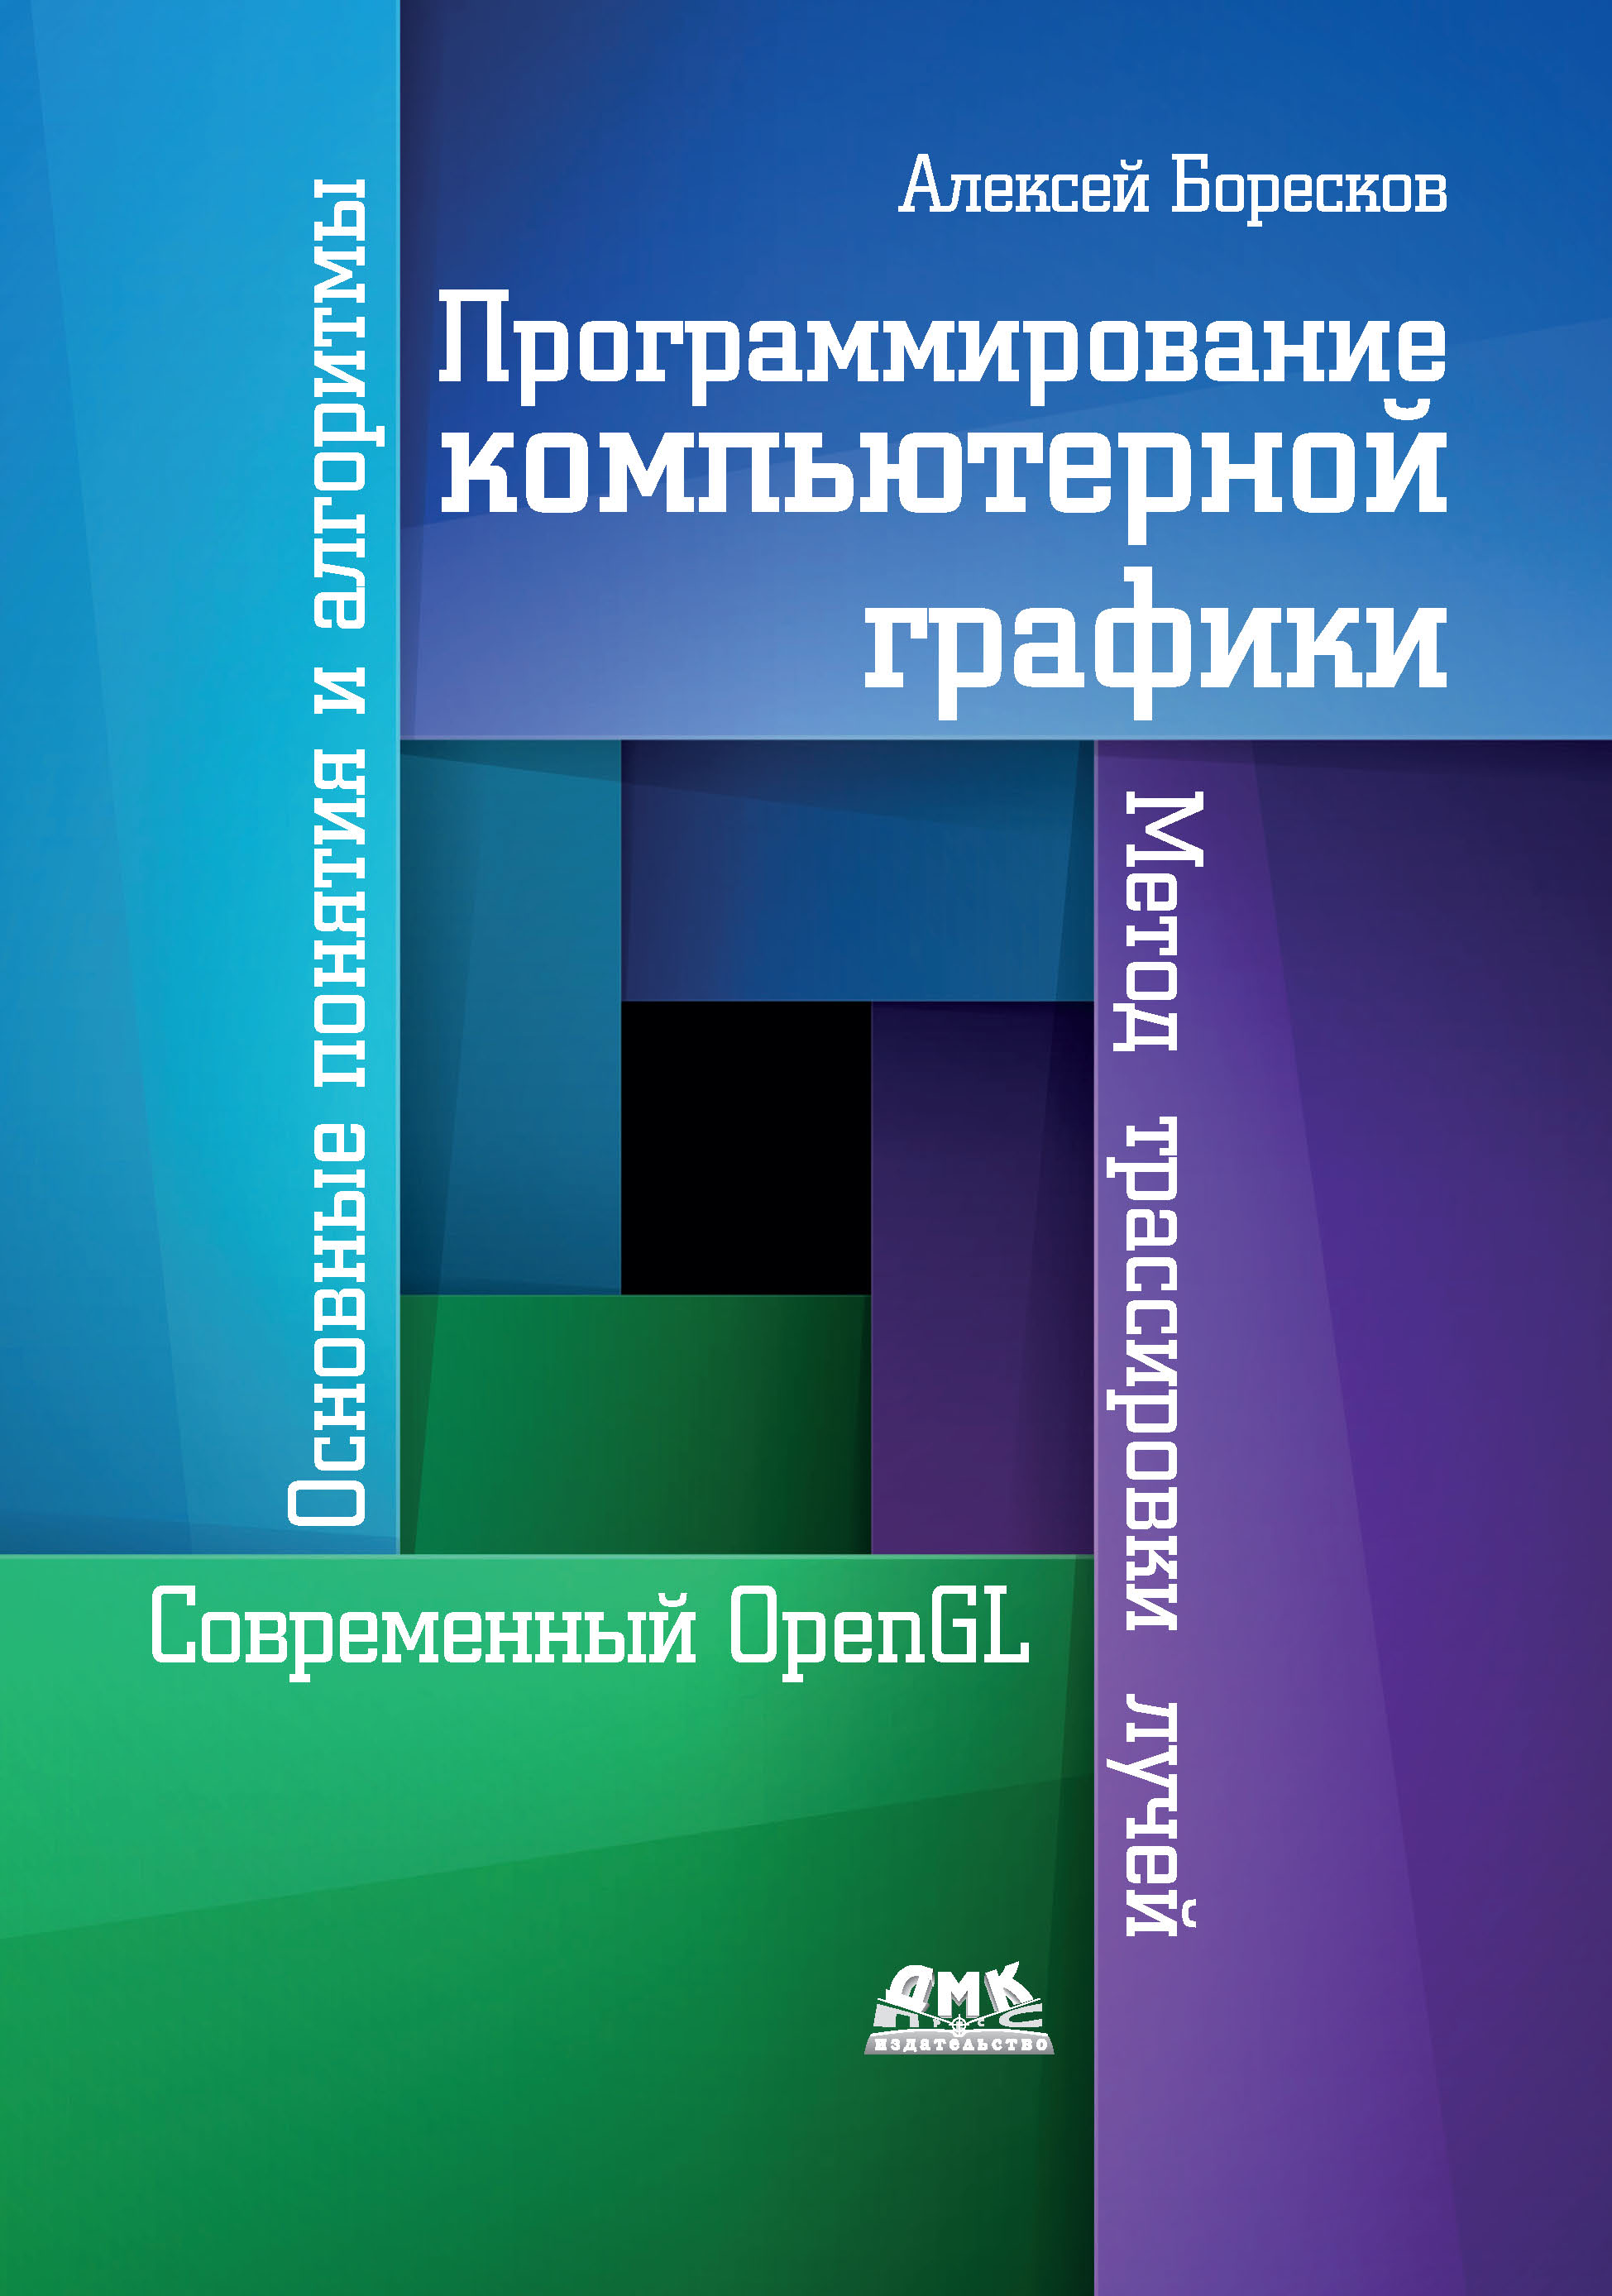 Книга  Программирование компьютерной графики. Современный OpenGL созданная Алексей Викторович Боресков может относится к жанру программирование. Стоимость электронной книги Программирование компьютерной графики. Современный OpenGL с идентификатором 45670256 составляет 649.00 руб.